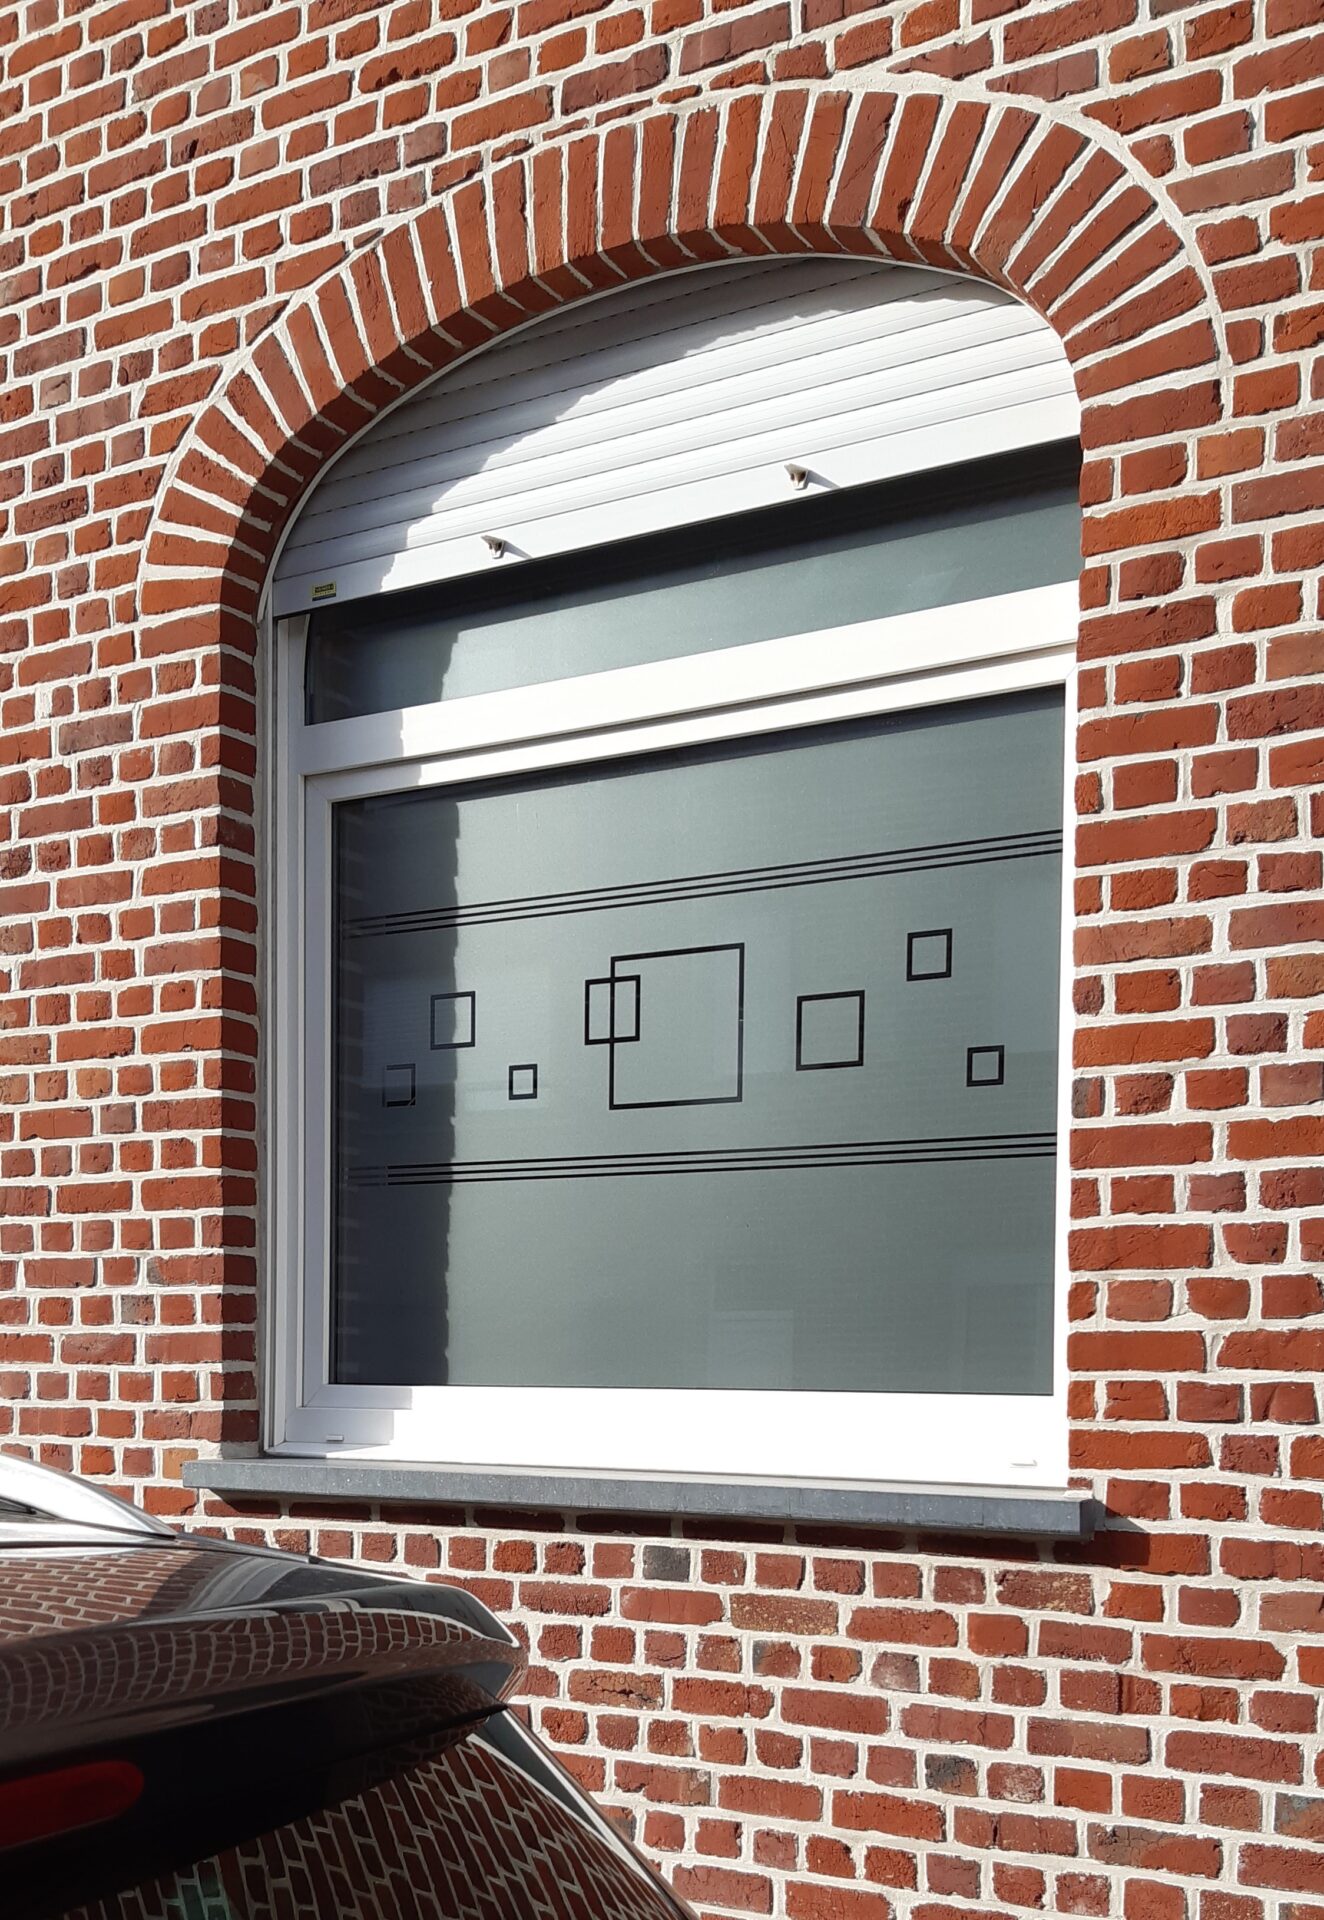 Film effet verre sablé sur vitre avec motif lignes et carrés